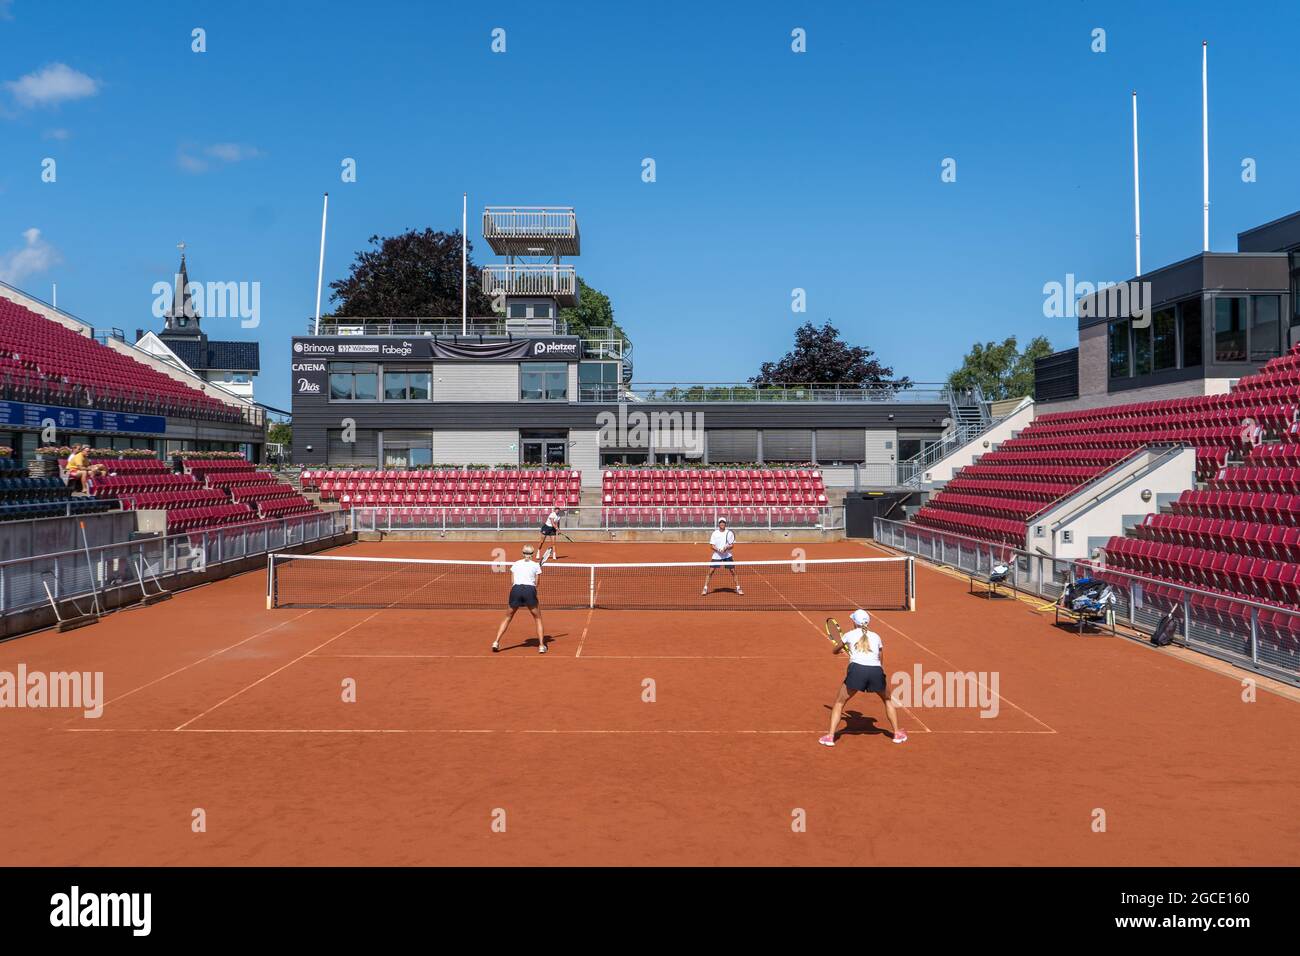 Center court at Båstad Tennis stadium in Sweden Stock Photo - Alamy